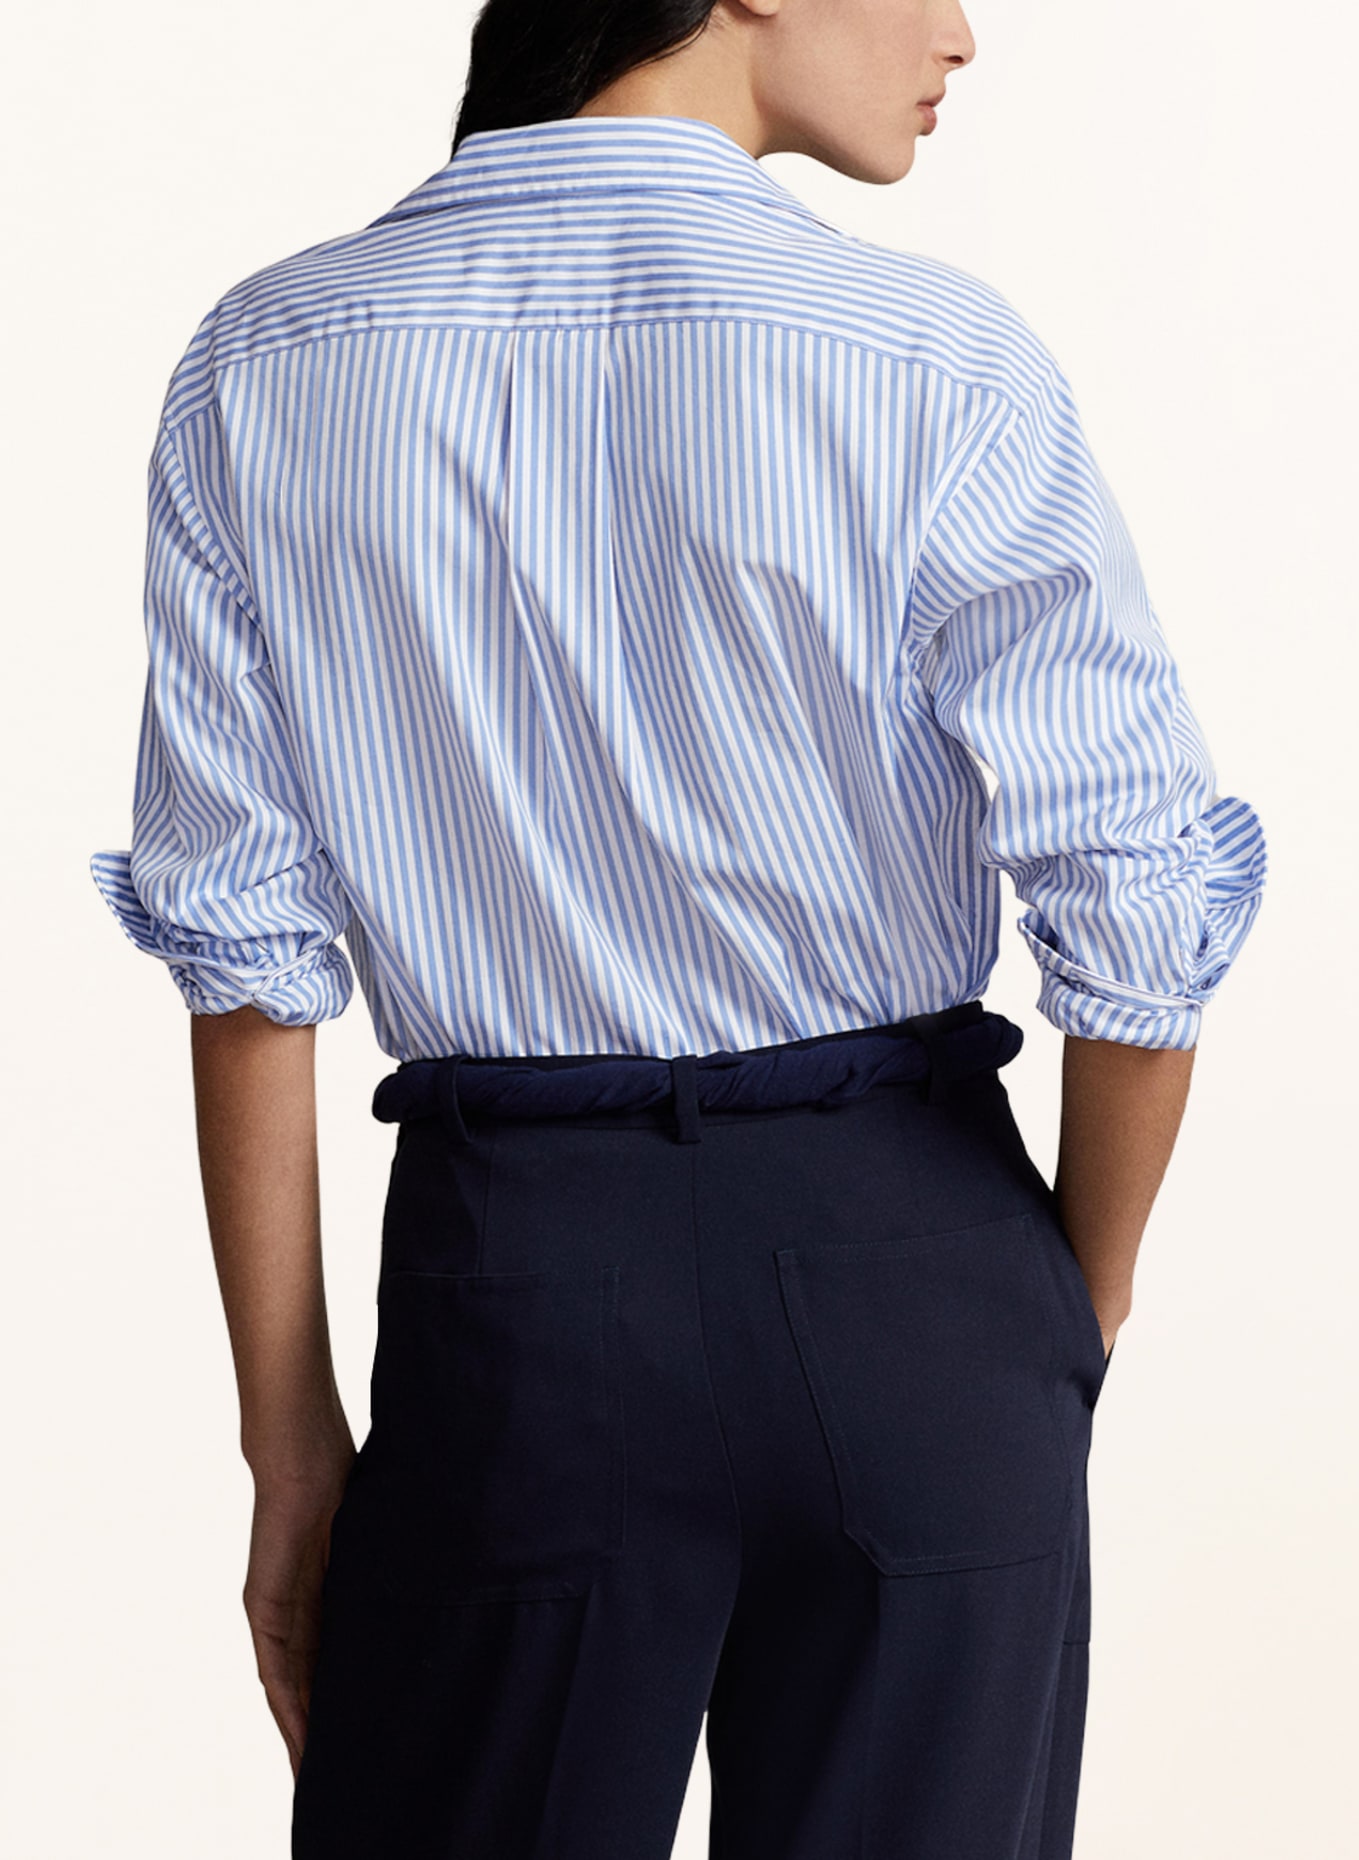 POLO RALPH LAUREN Shirt blouse, Color: WHITE/ LIGHT BLUE (Image 3)